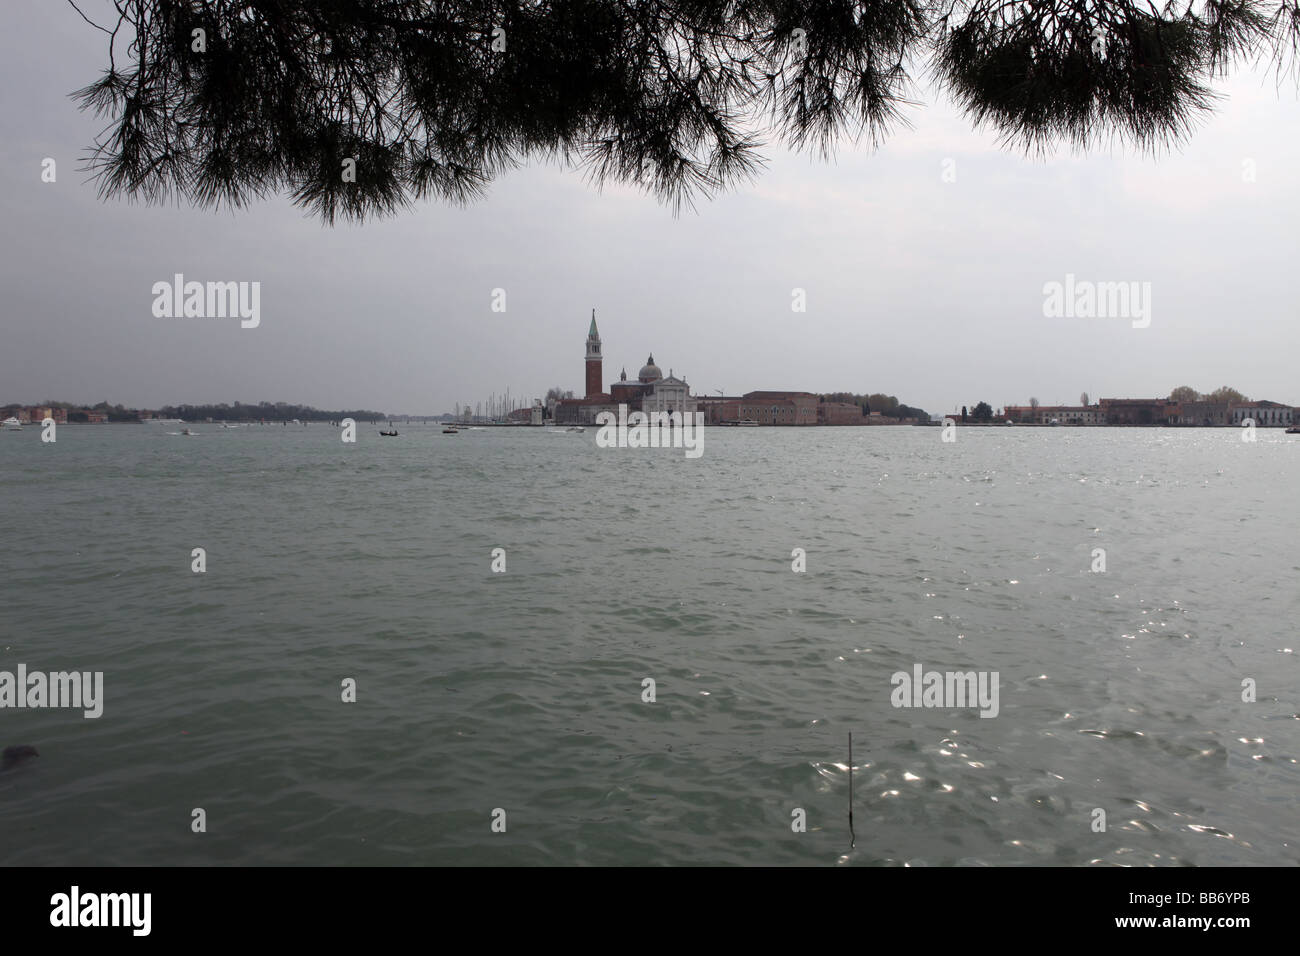 View of San Giorgio Maggiore - Canal di san marco - Venice - Italy Stock Photo